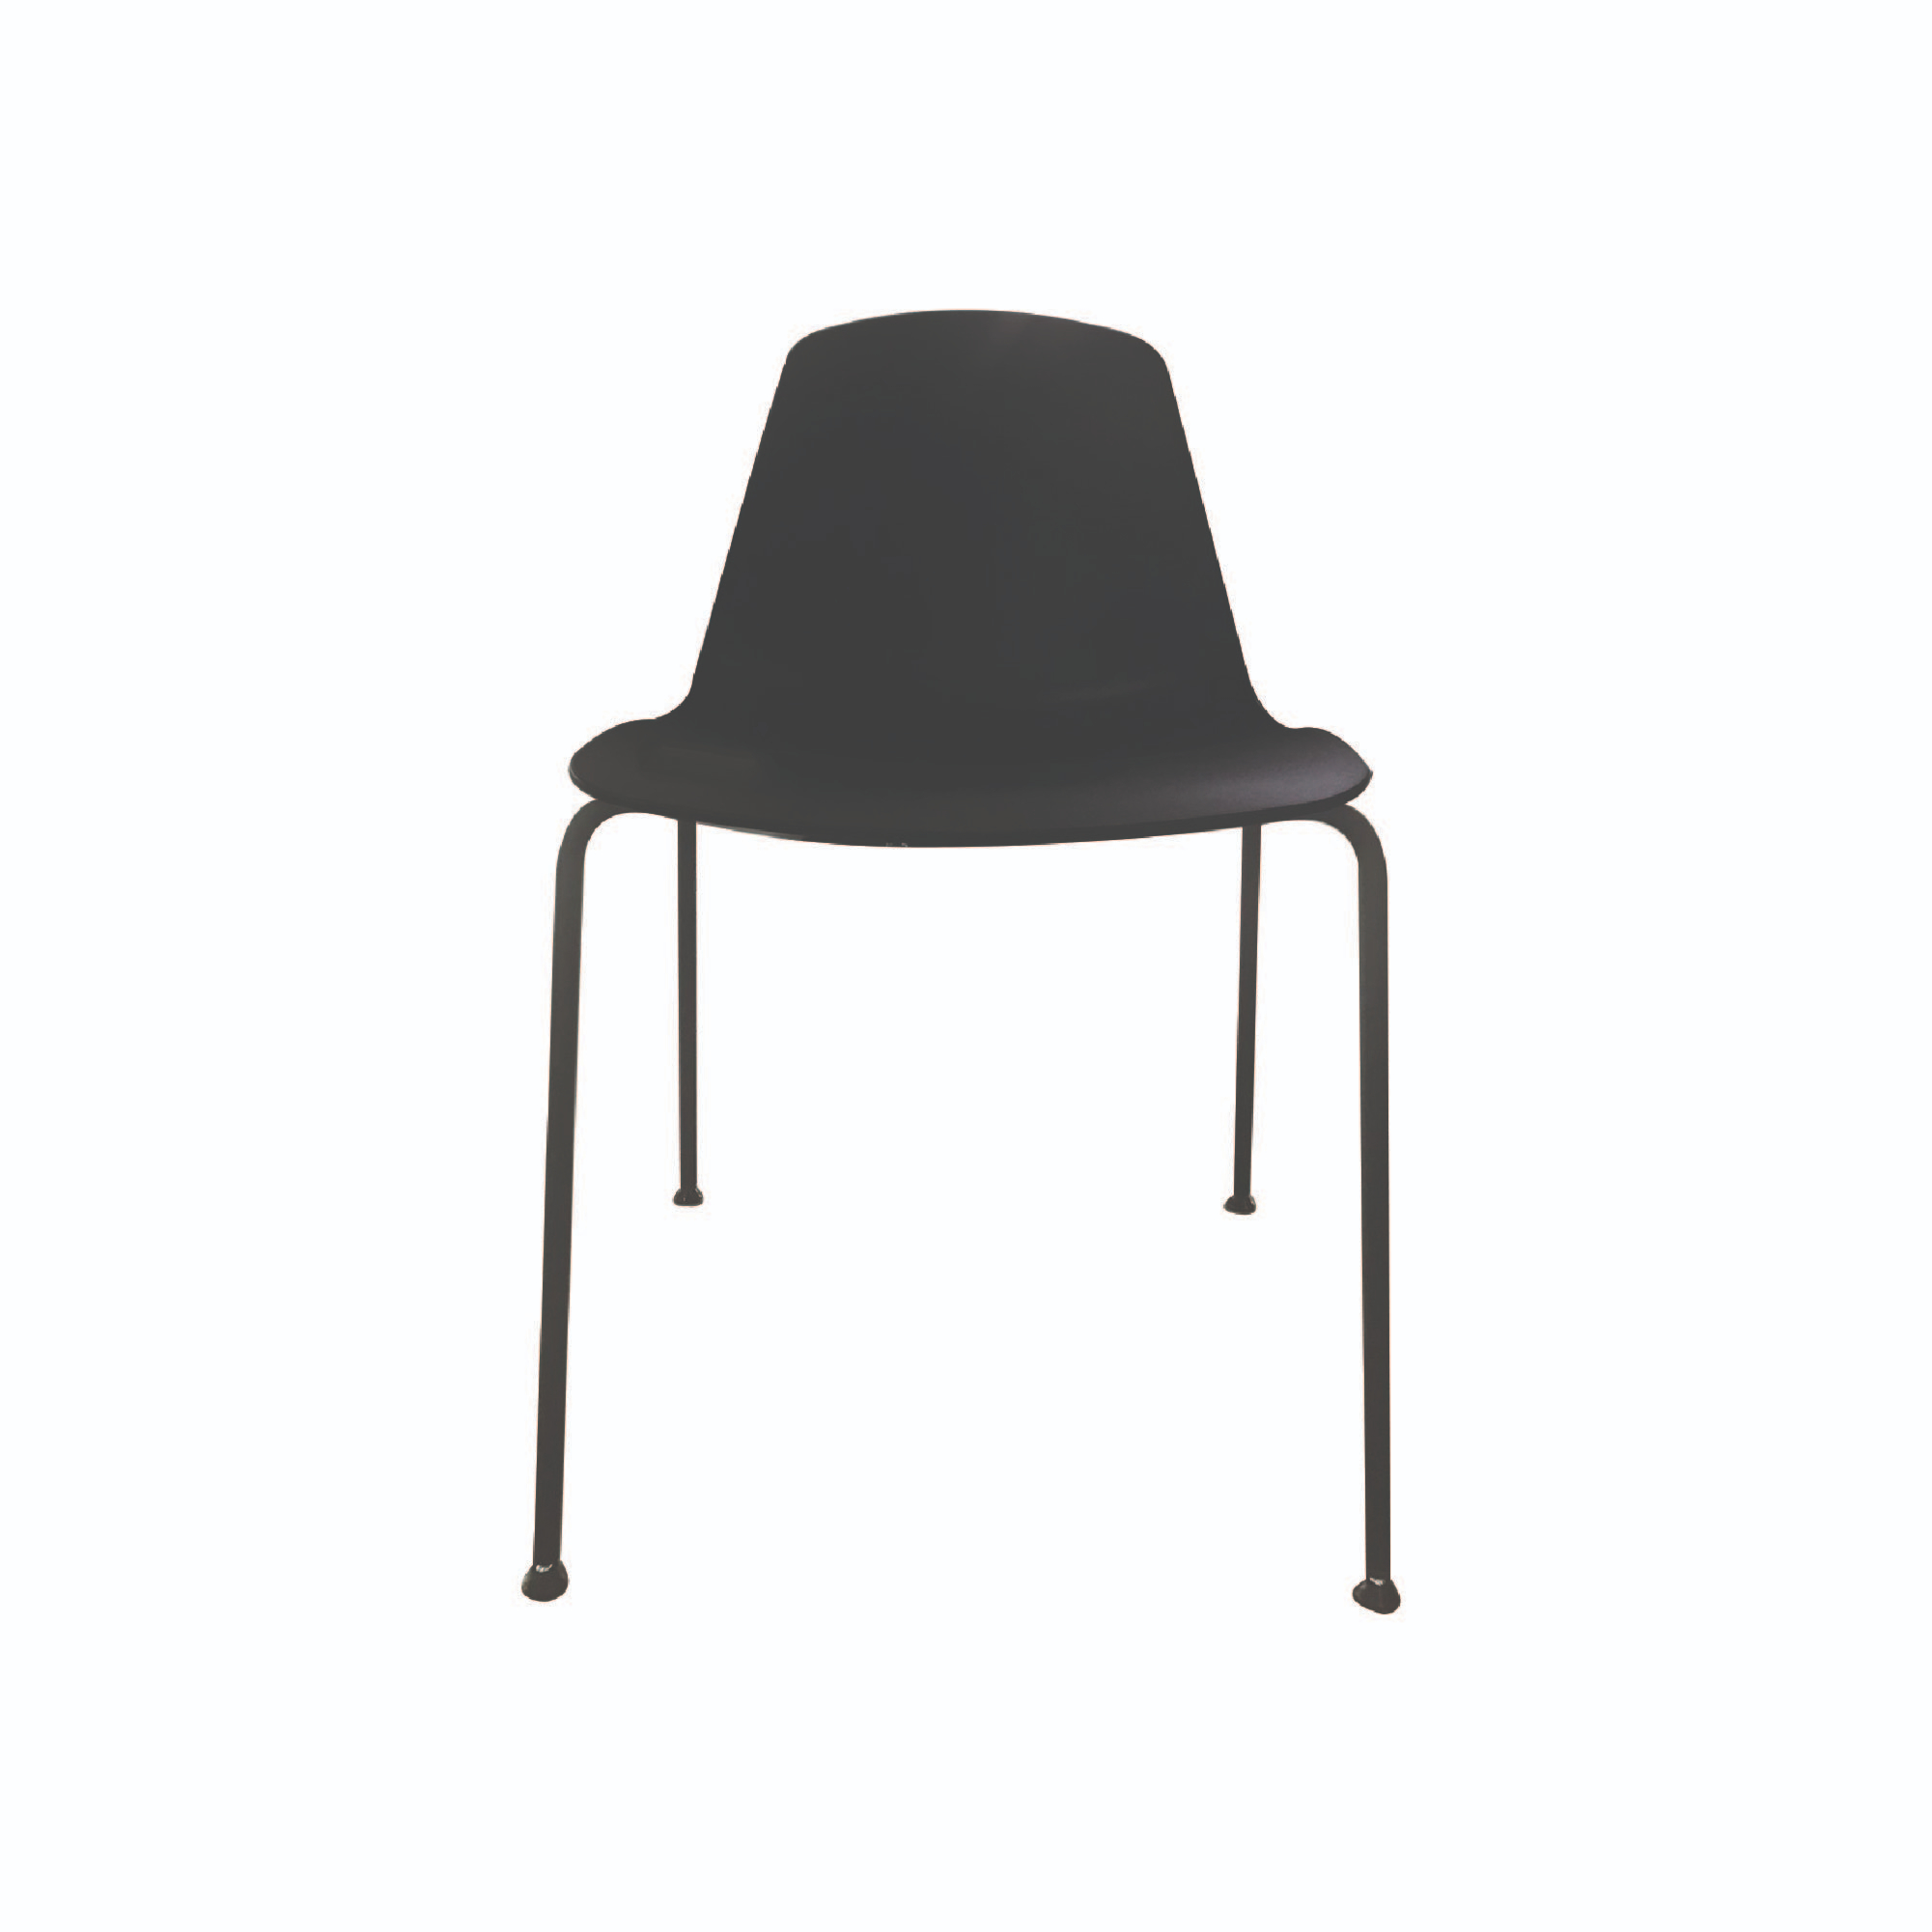 KC Chair 4 Legs Black Coated , EPFN02